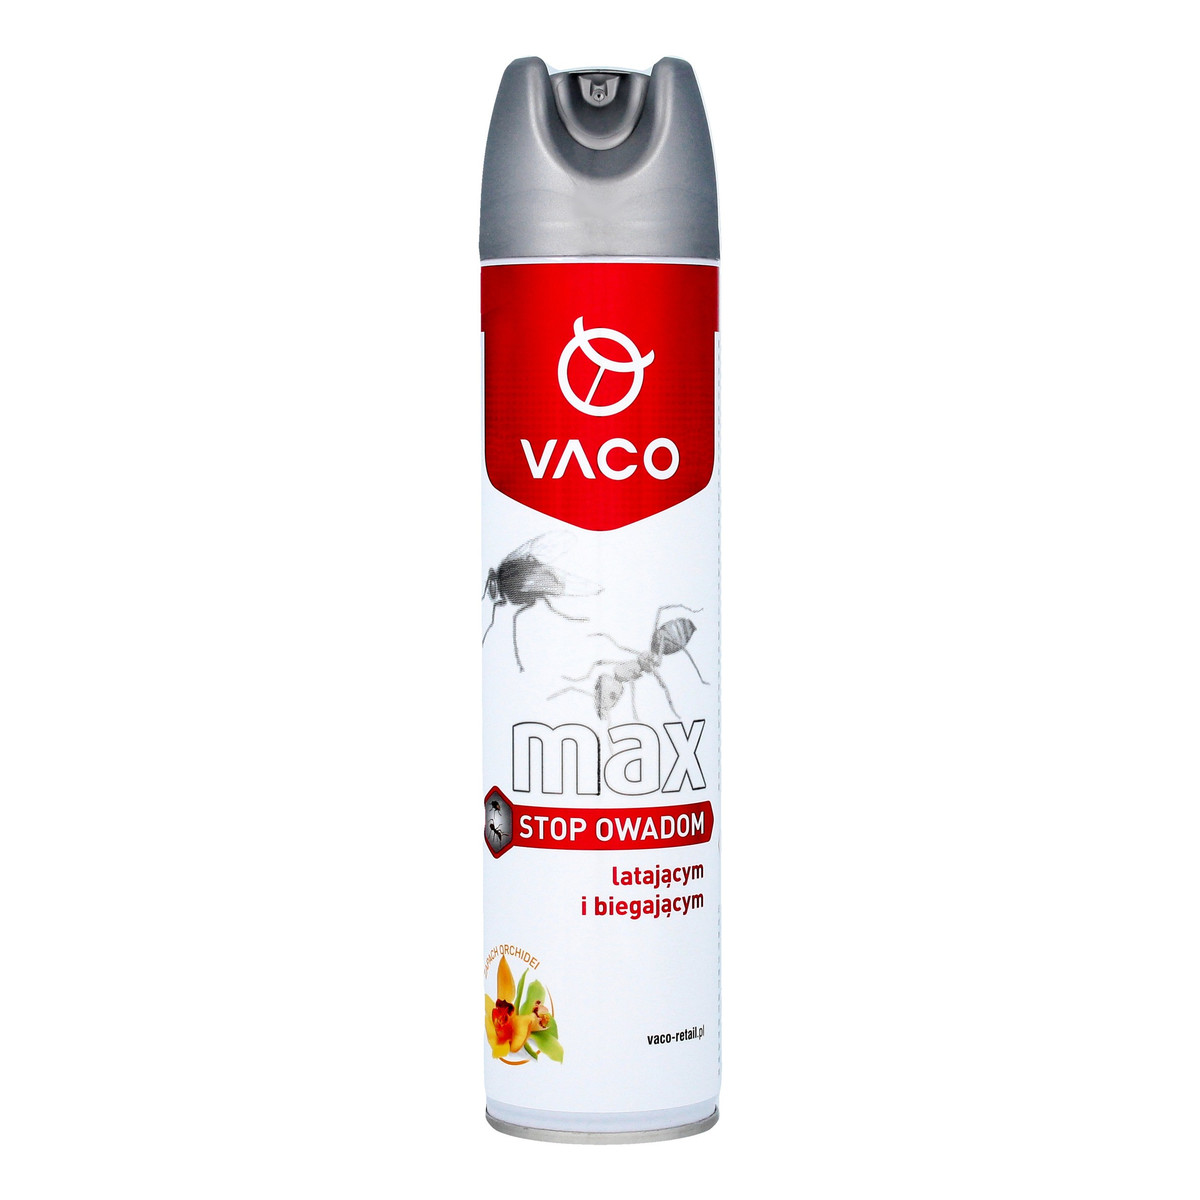 Vaco MAX Spray Stop owadom latającym i biegającym 300ml